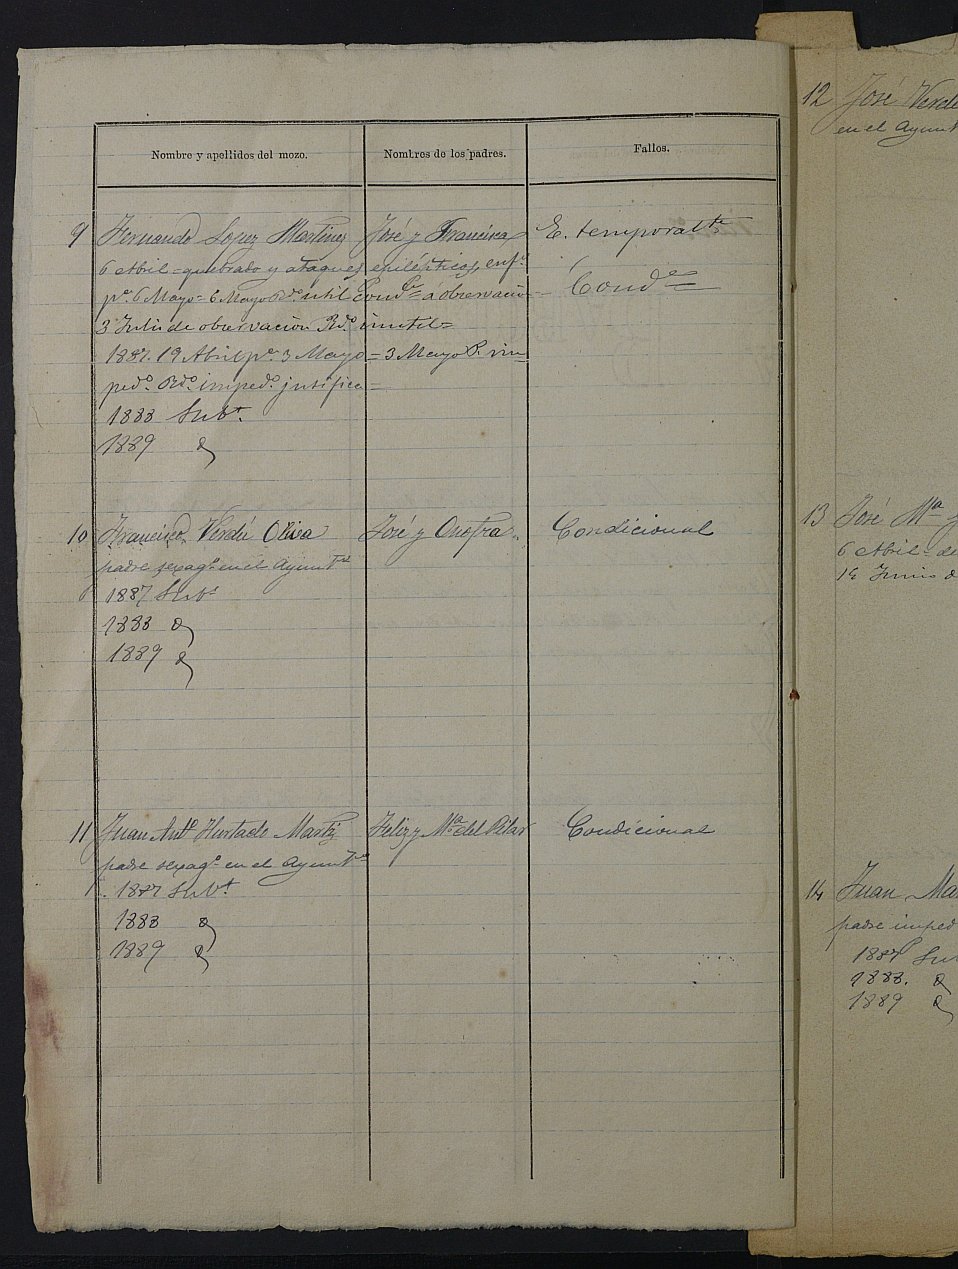 Relación de individuos declarados soldados e ingresados en Caja del Ayuntamiento de Alguazas de 1886.